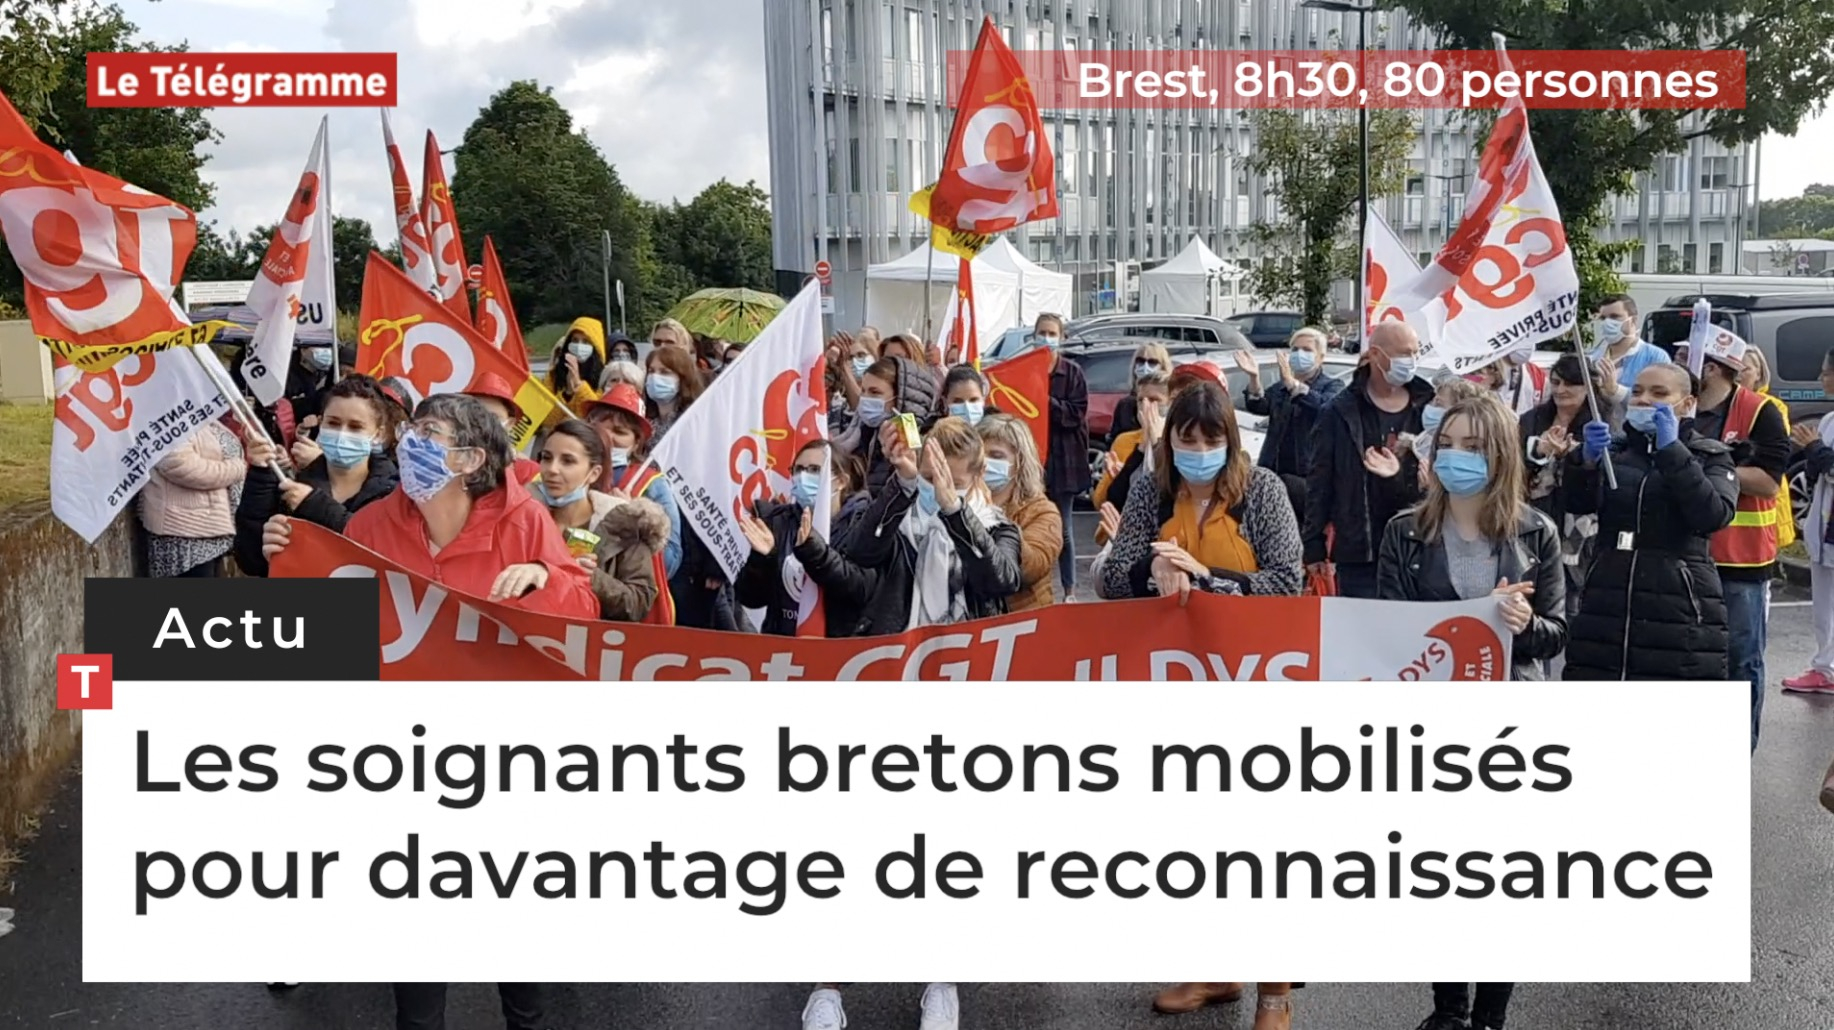 Les soignants bretons mobilisés pour davantage de reconnaissance (Le Télégramme)